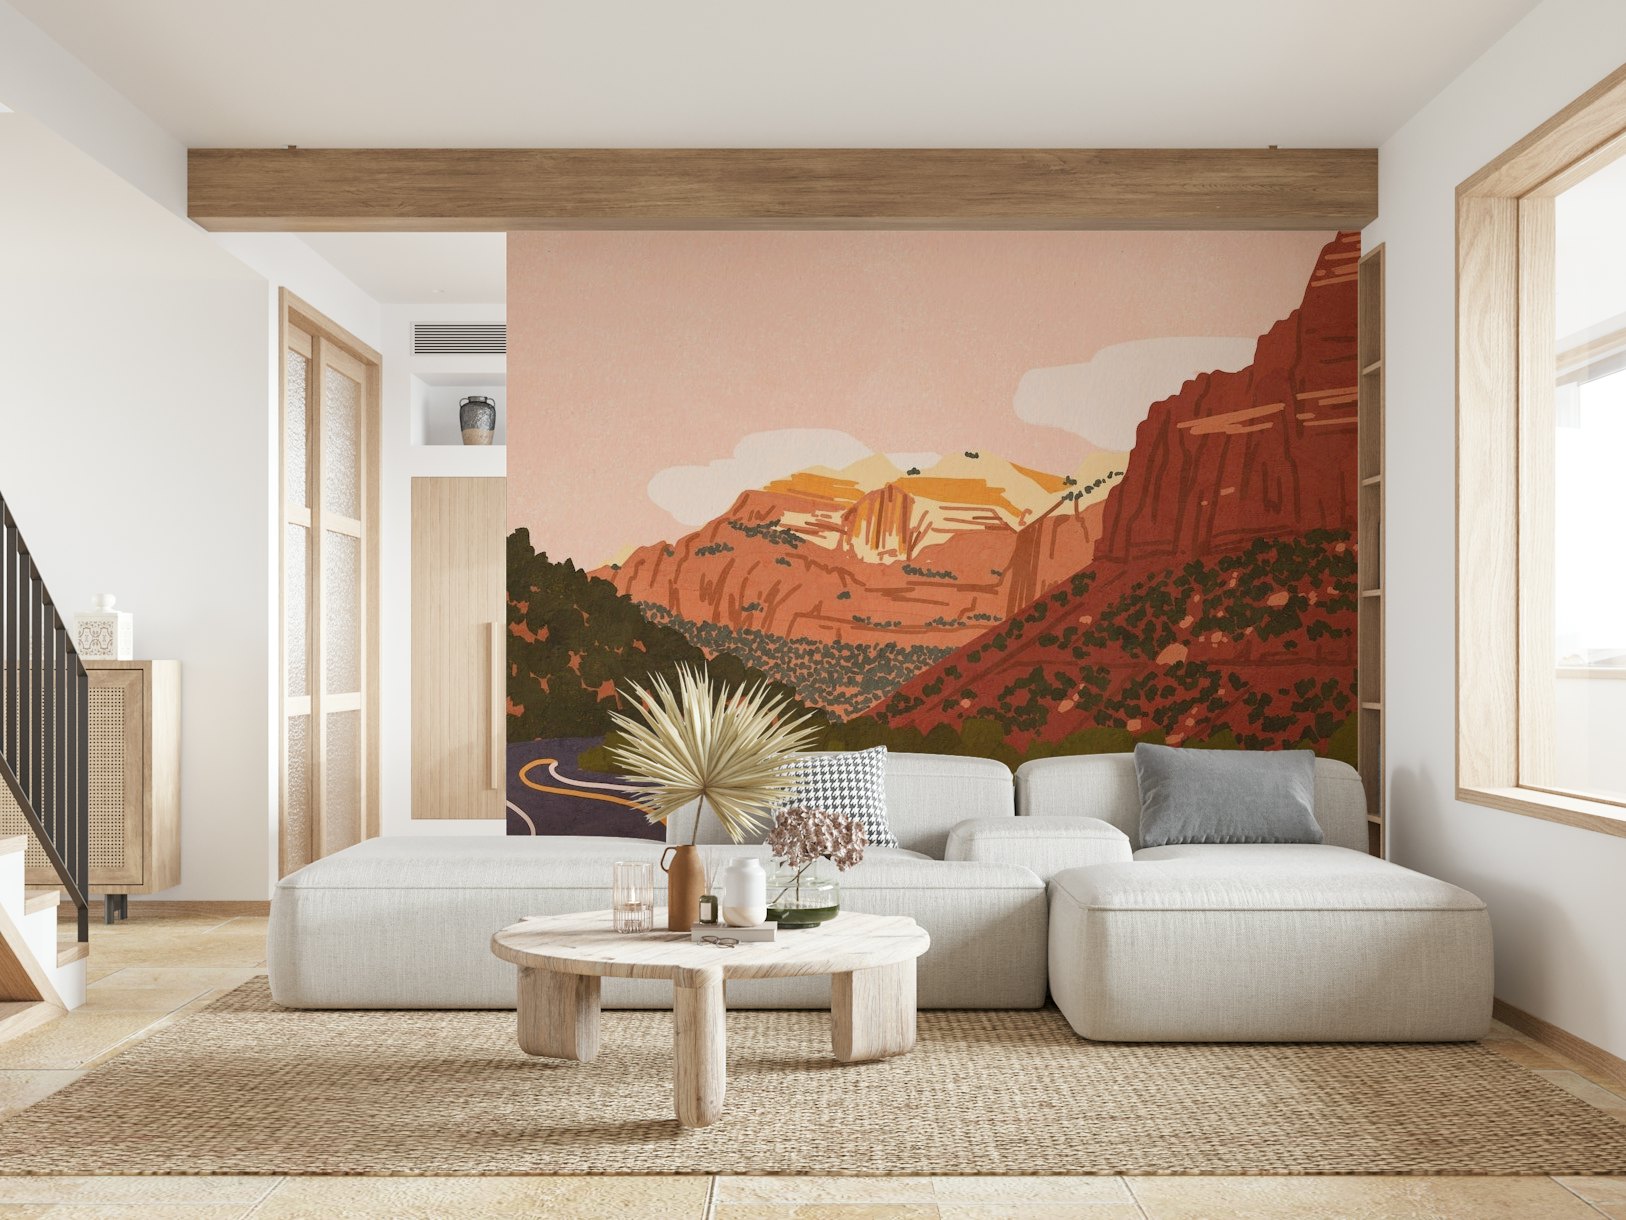 Zion Canyon Drive wallpaper